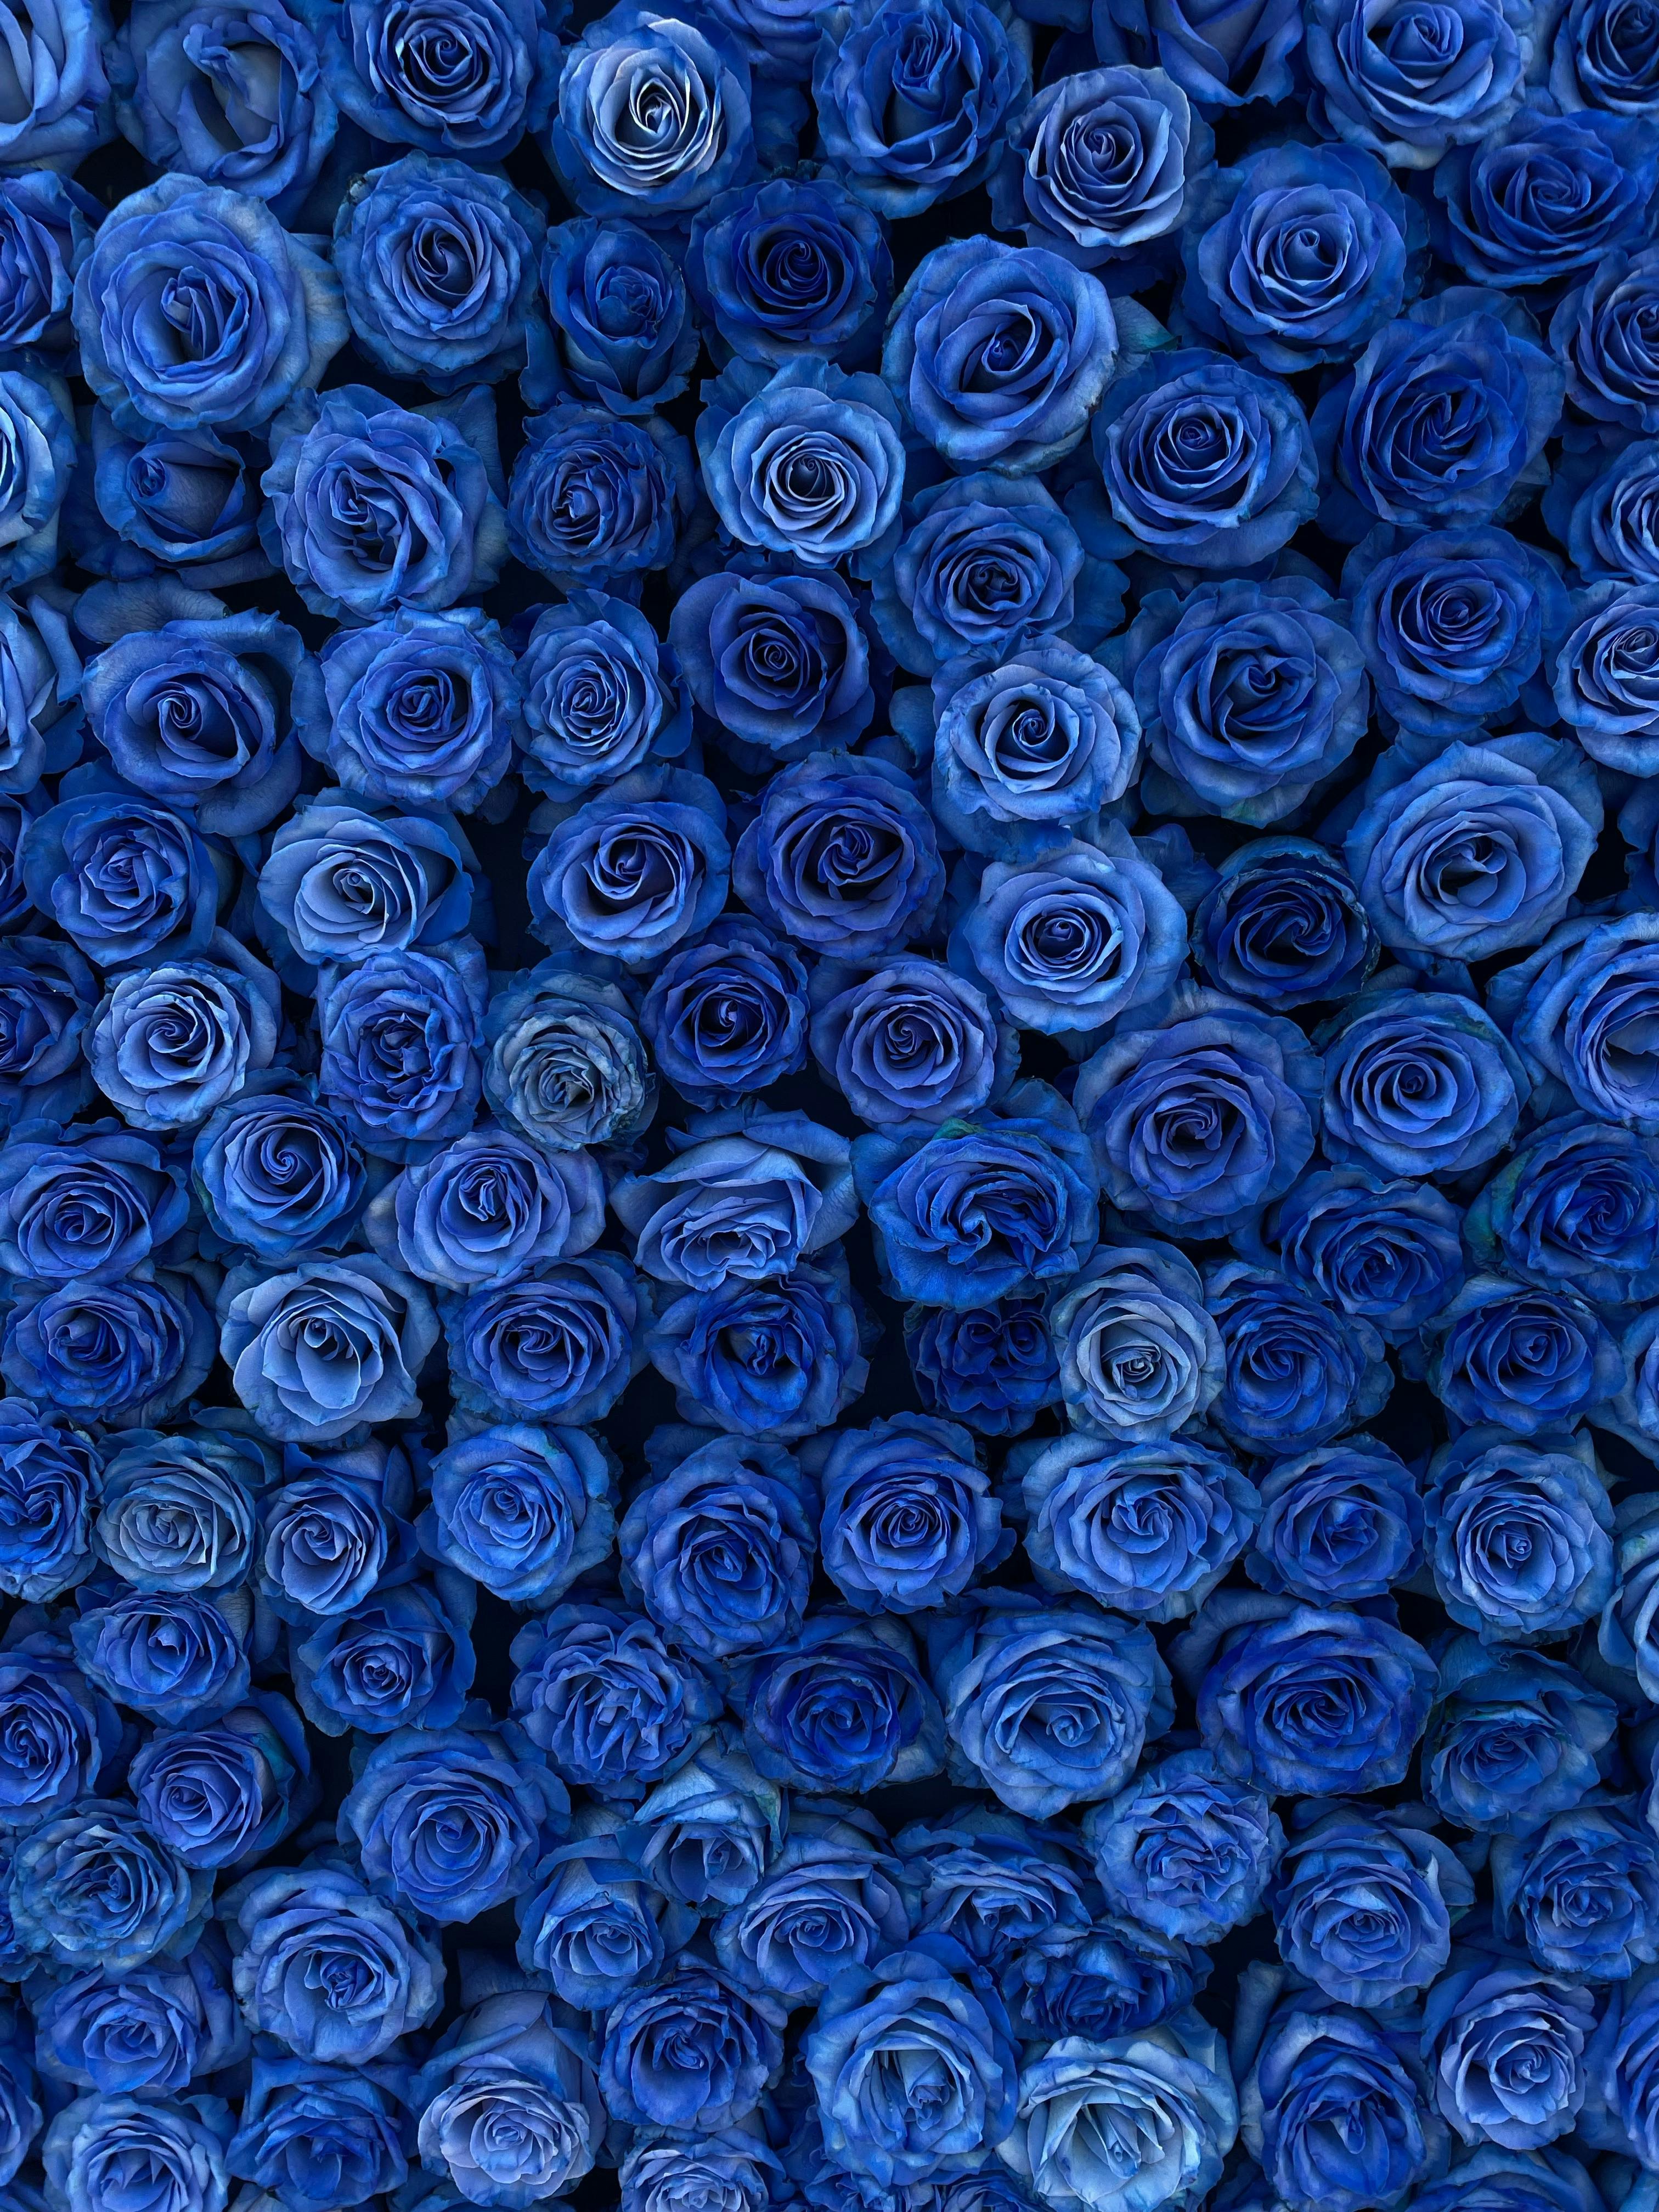 Tải 120 hình nền hoa hồng đẹp nhất thế giới full HD cực nét  Beautiful  flowers Flowers Pink roses